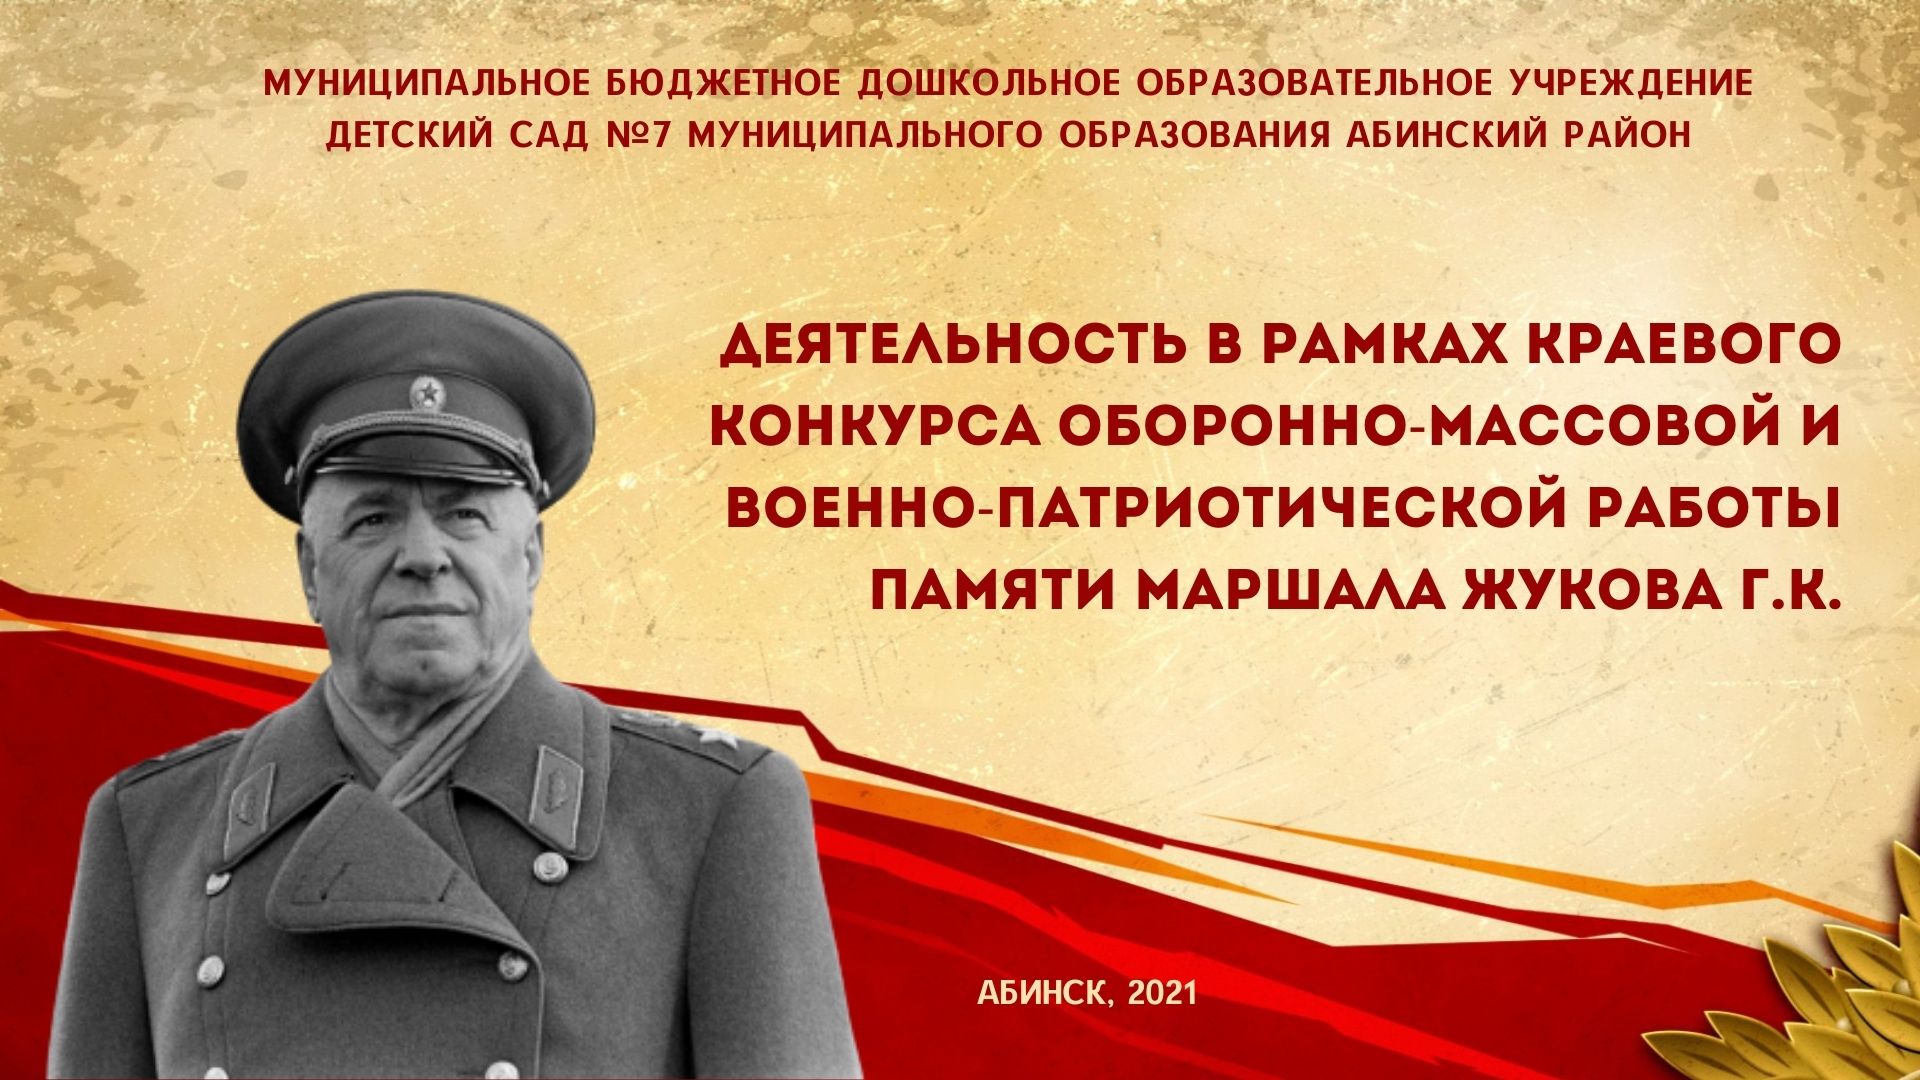 Краевой конкурс оборонно-массовой и военно-патриотической работы памяти маршала Жукова Г.К. в 2021 г